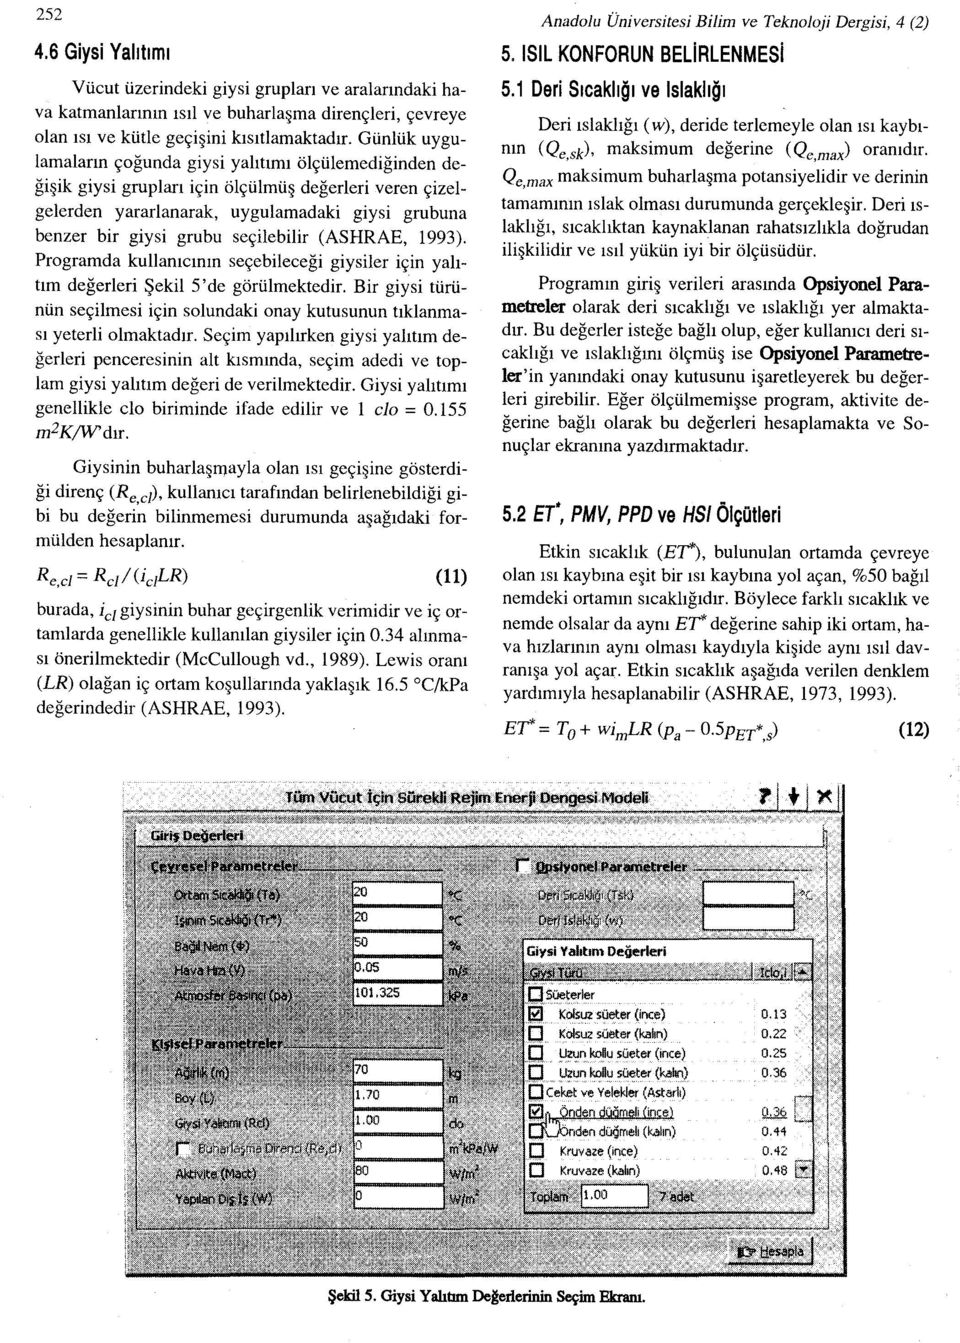 seçilebilir (ASHRAE, 1993). Programda kullanıcının seçebileceği giysiler için yalıtım değerleri Şekil 5'de görülmektedir.